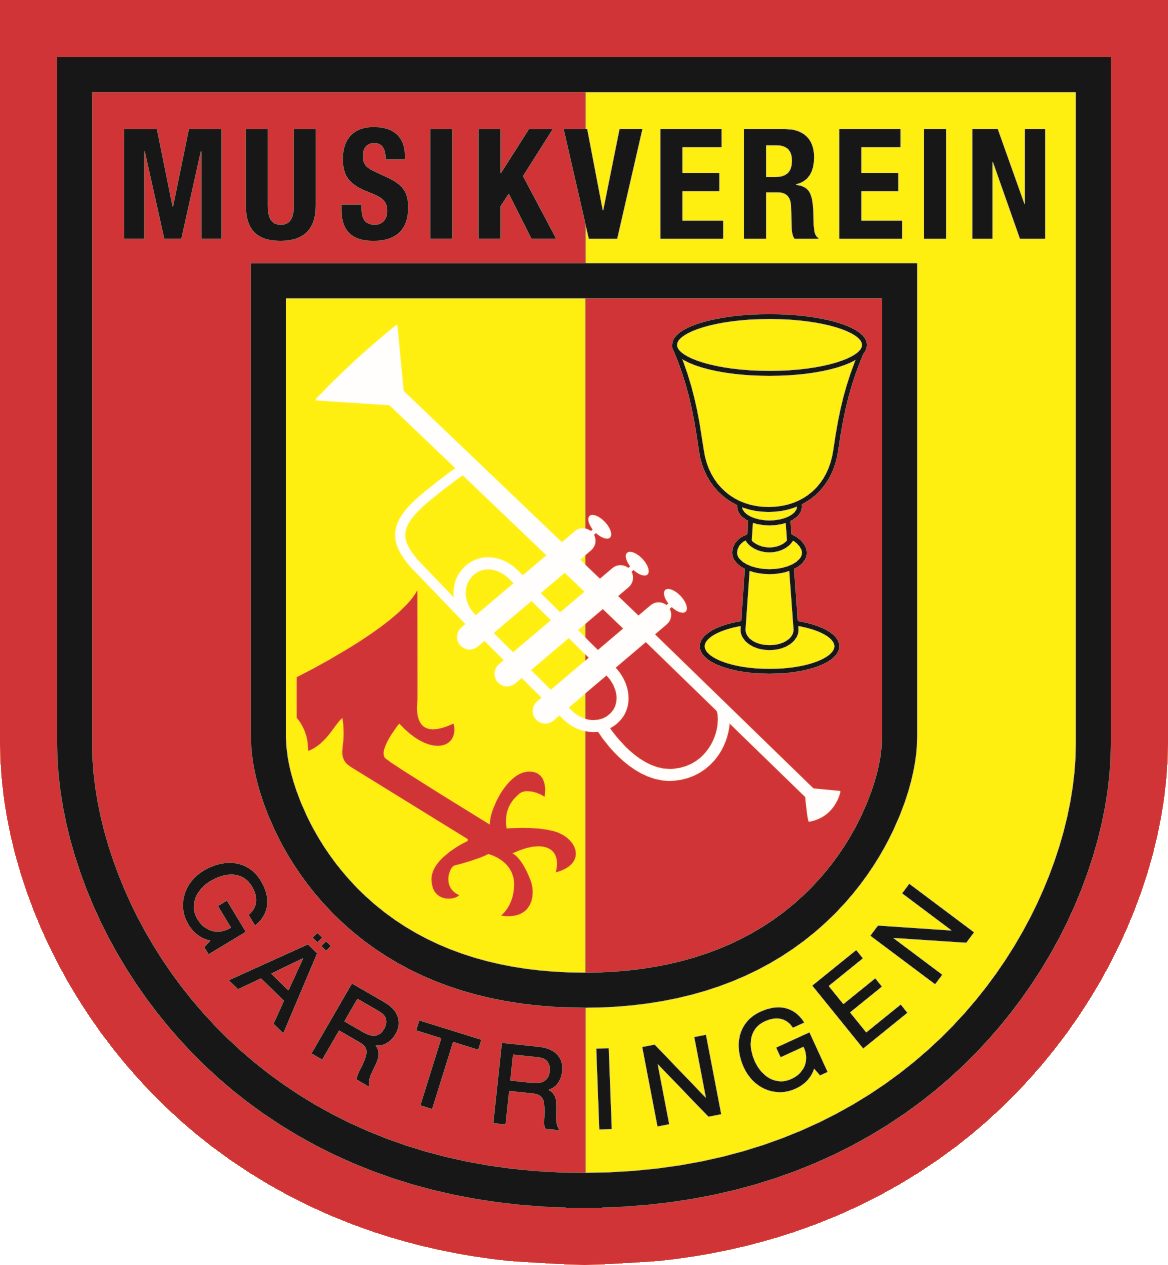 Musikverein Gärtringen